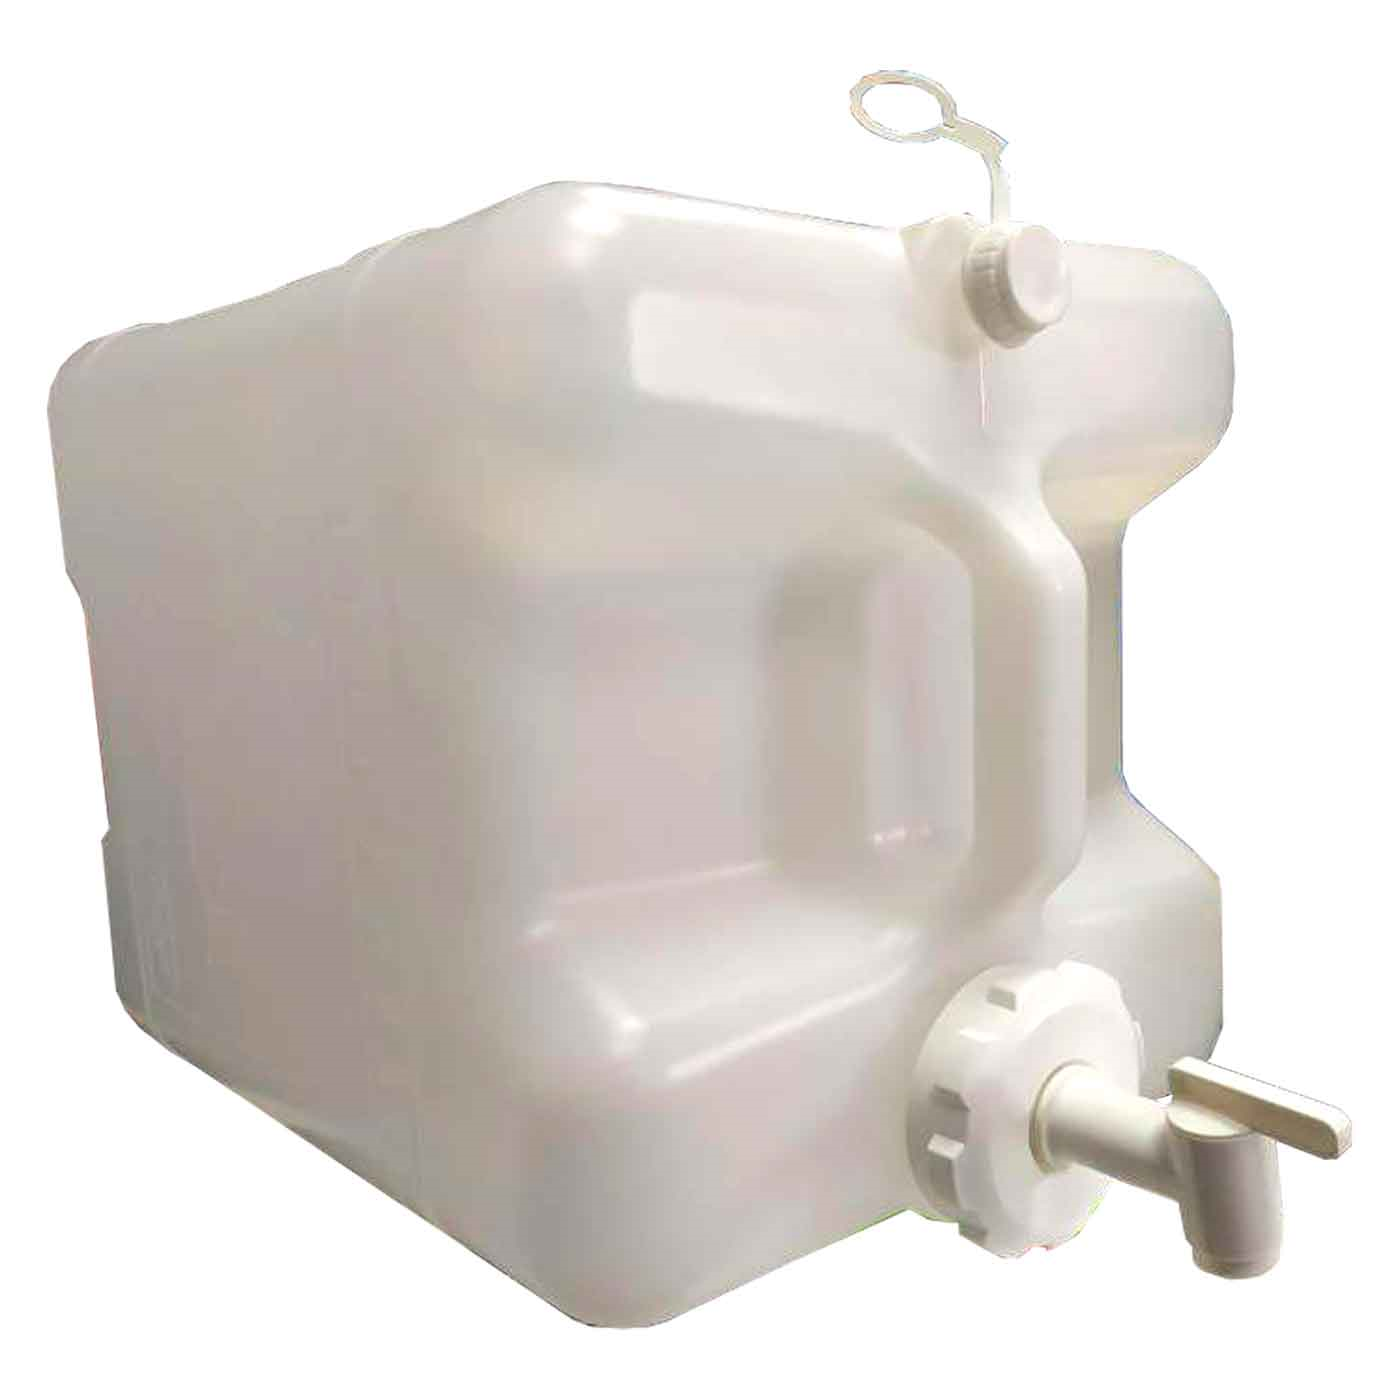 Tradineur - Cubo de basura rectangular con tapa - Fabricado en